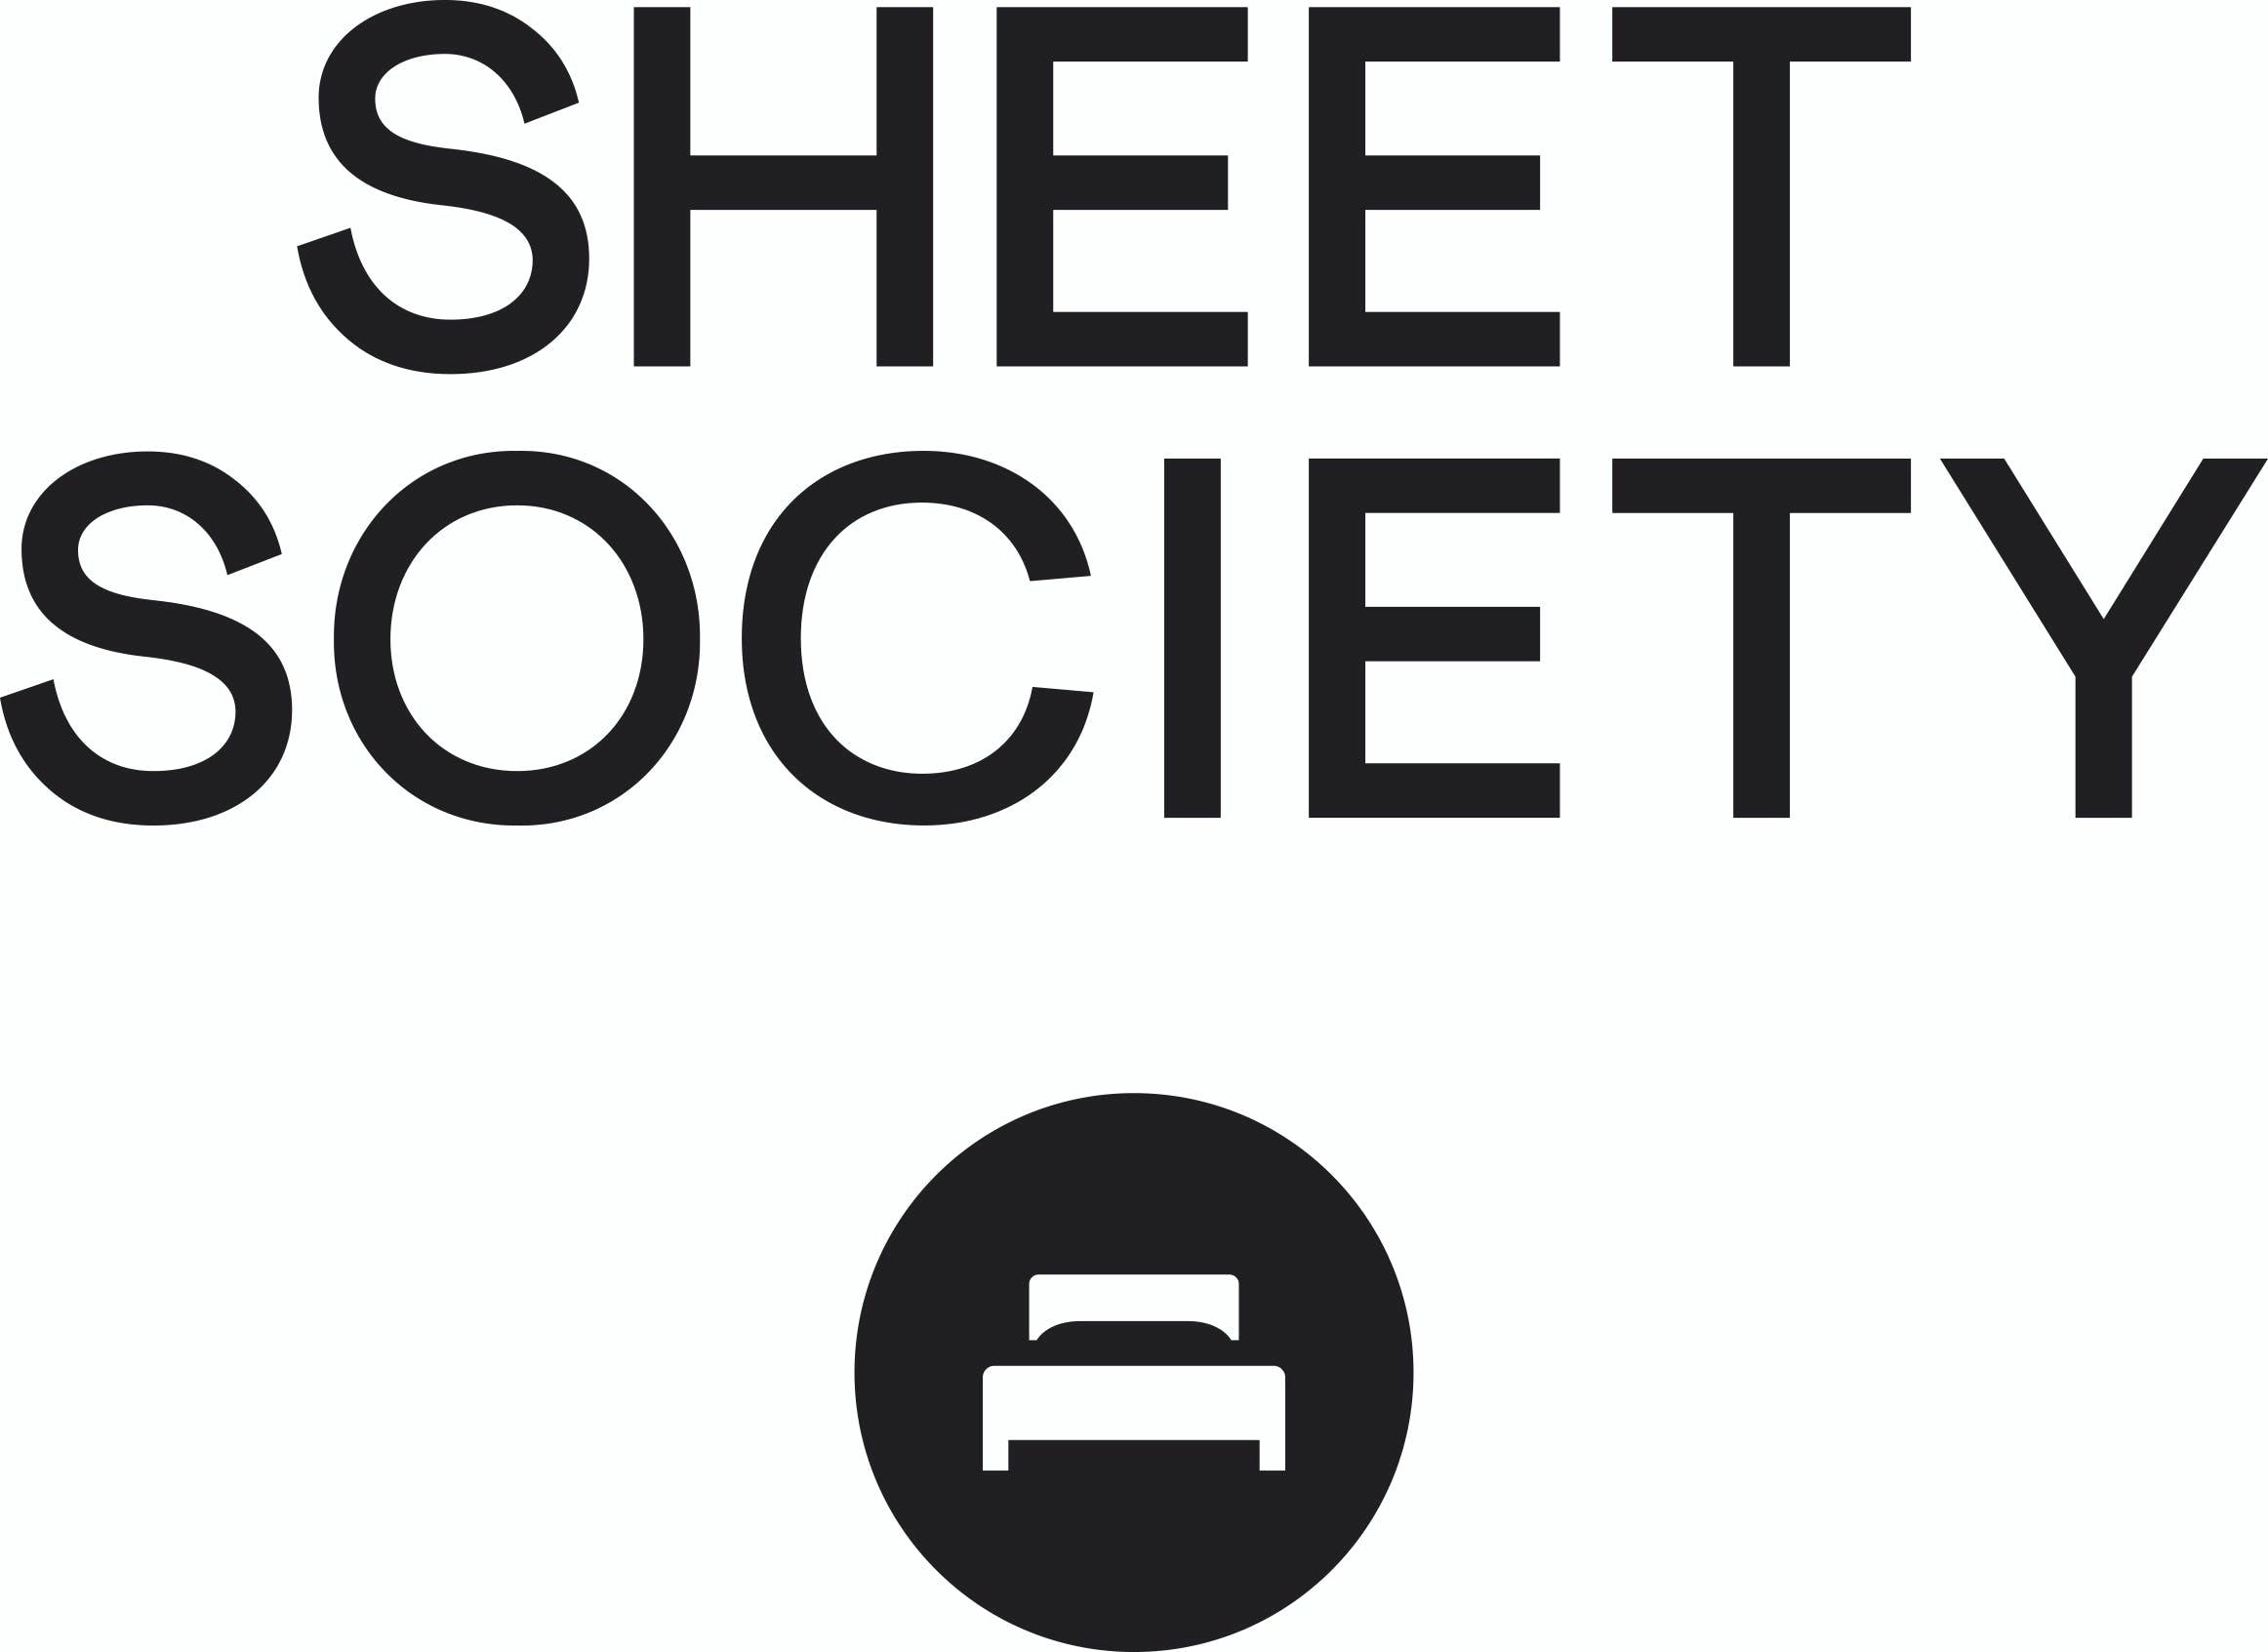 The Sheet Society